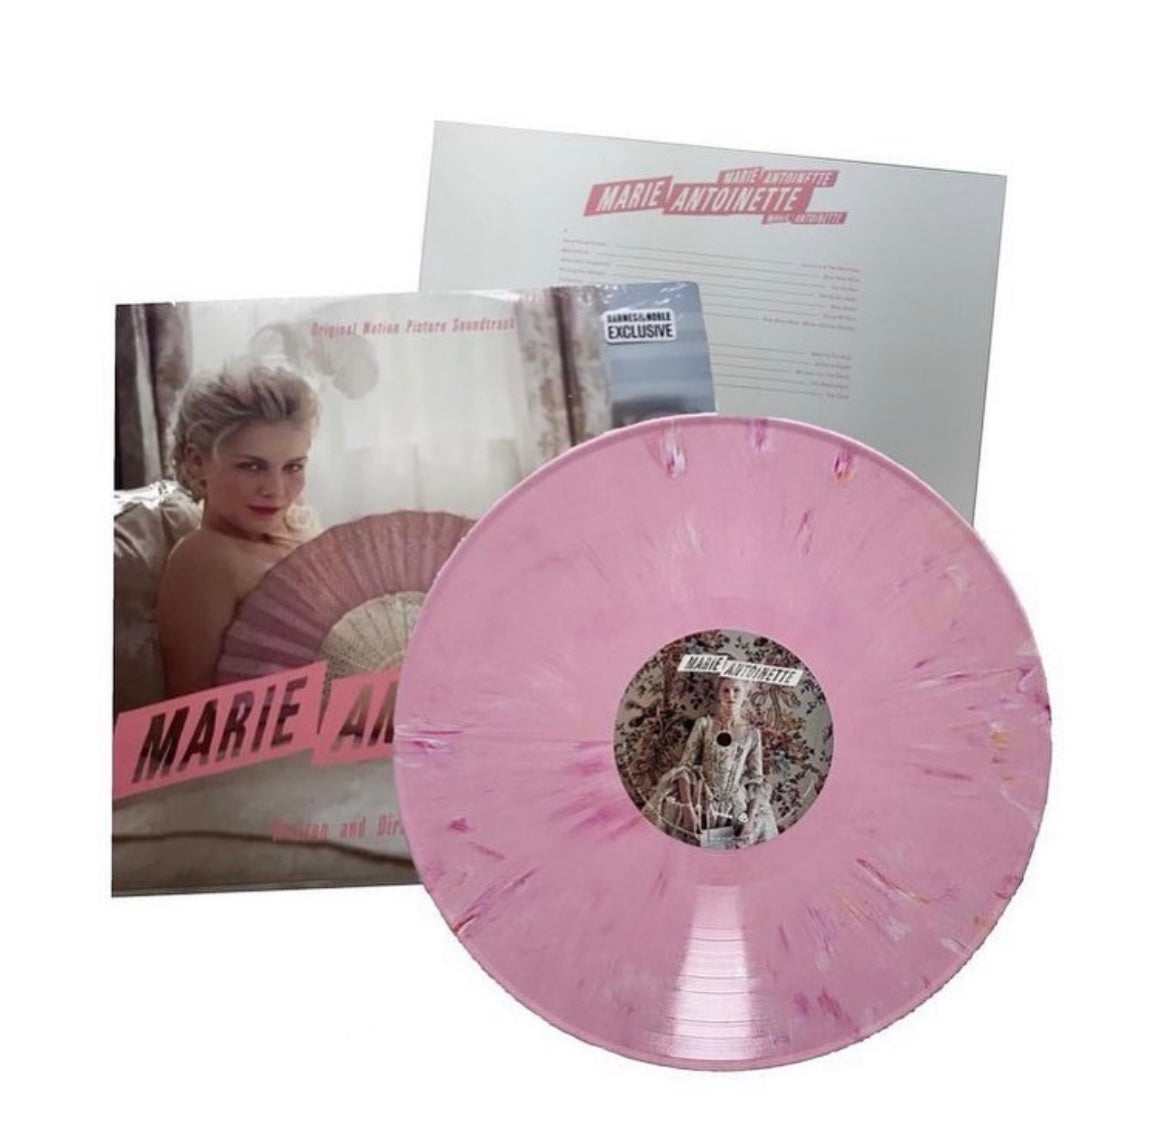 Marie Antoinette B&N exclusive vinyl